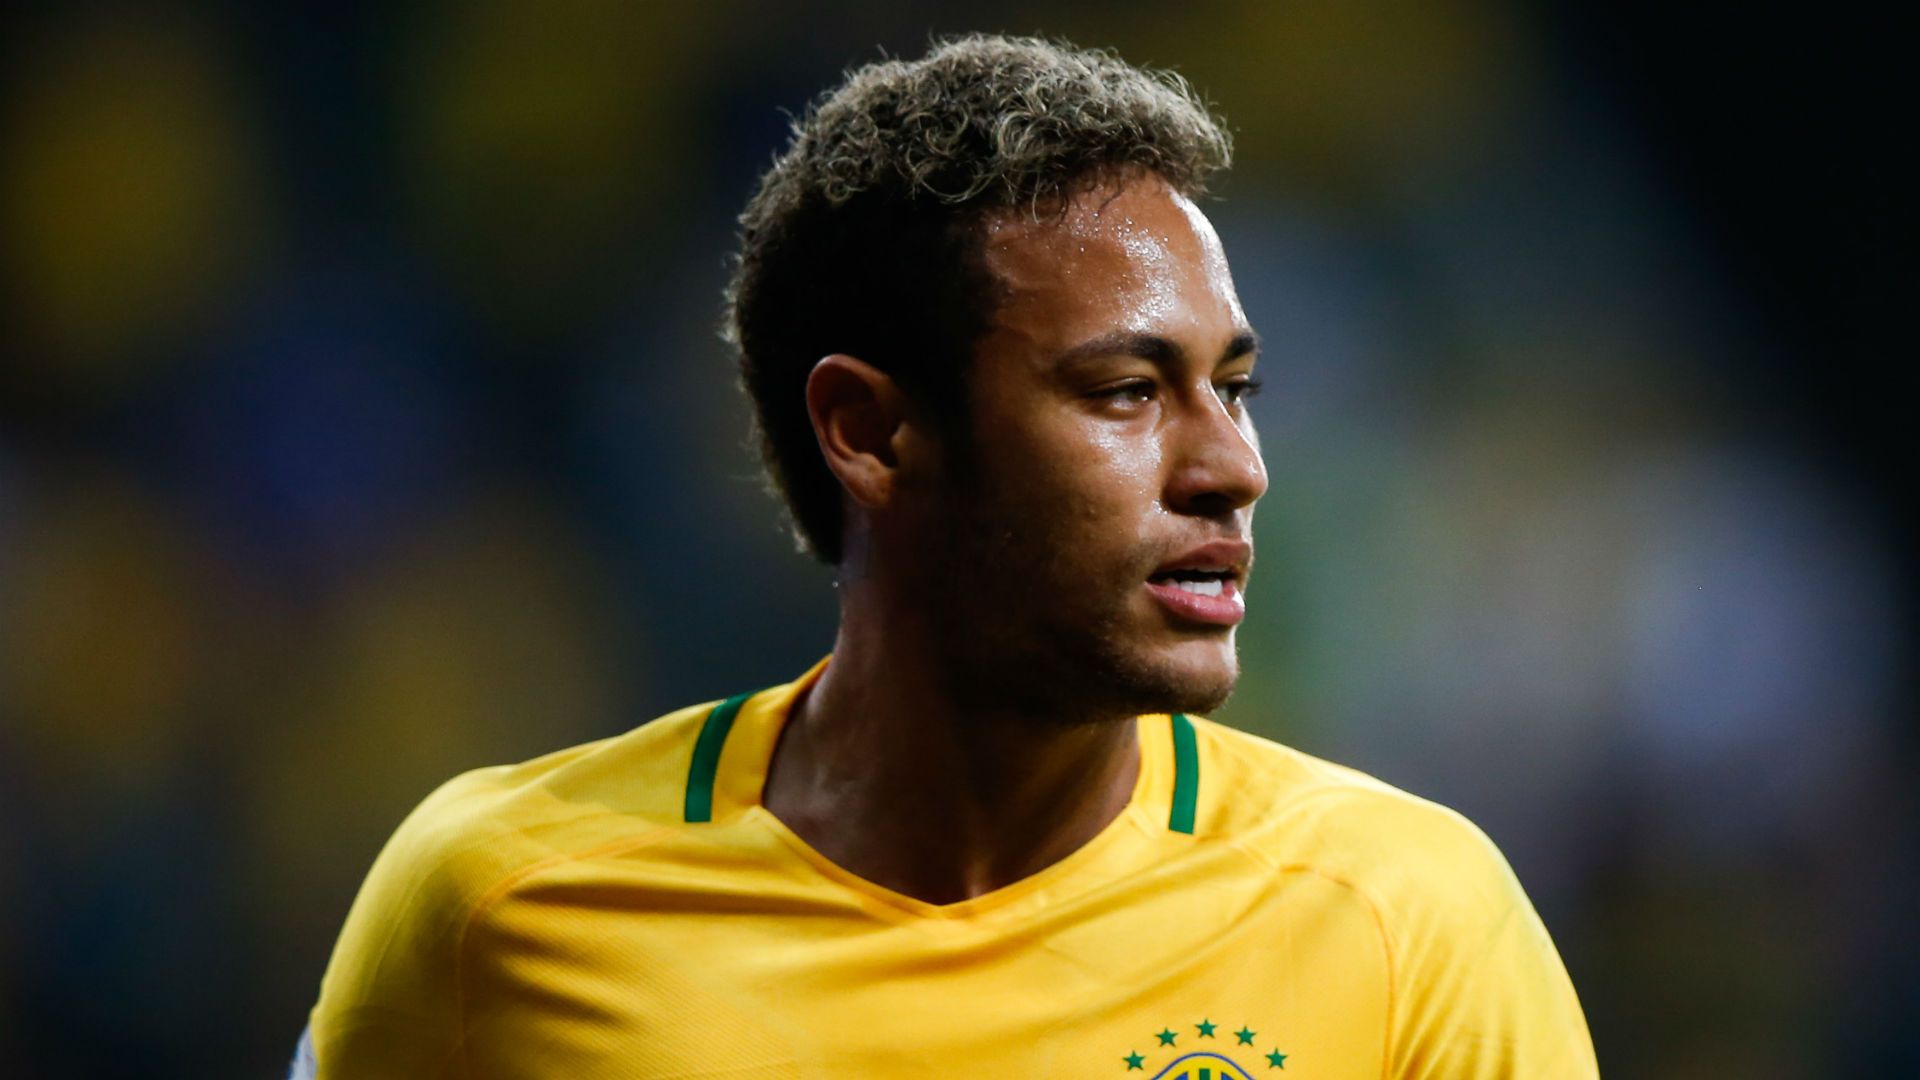 Neymar In Brazil 2018 , HD Wallpaper & Backgrounds